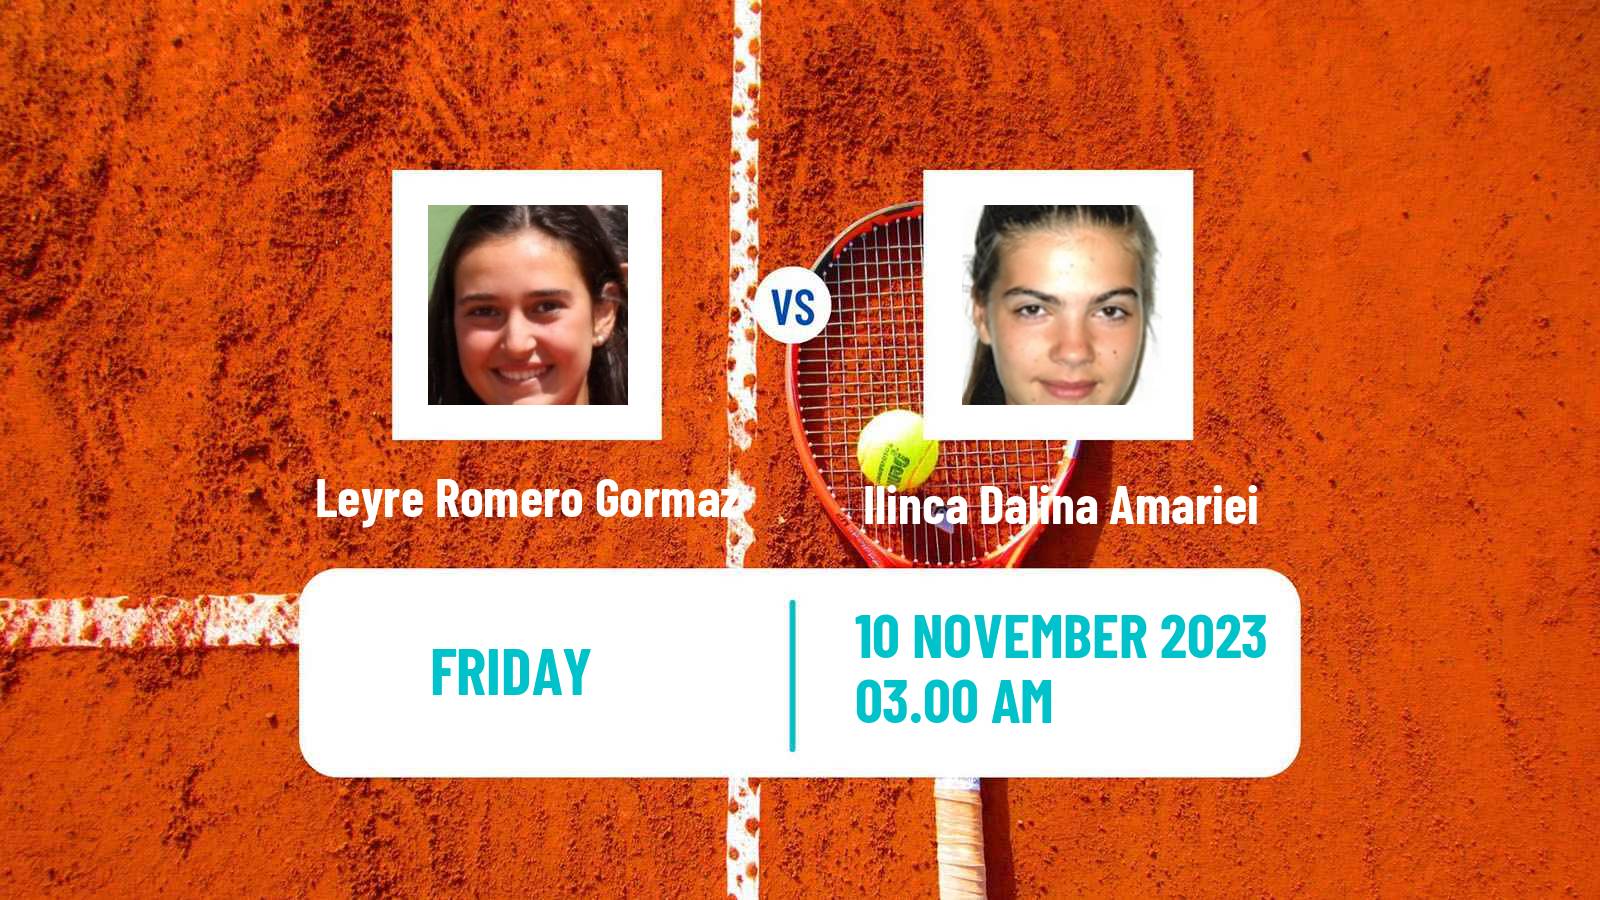 Tennis ITF W40 Heraklion 2 Women Leyre Romero Gormaz - Ilinca Dalina Amariei